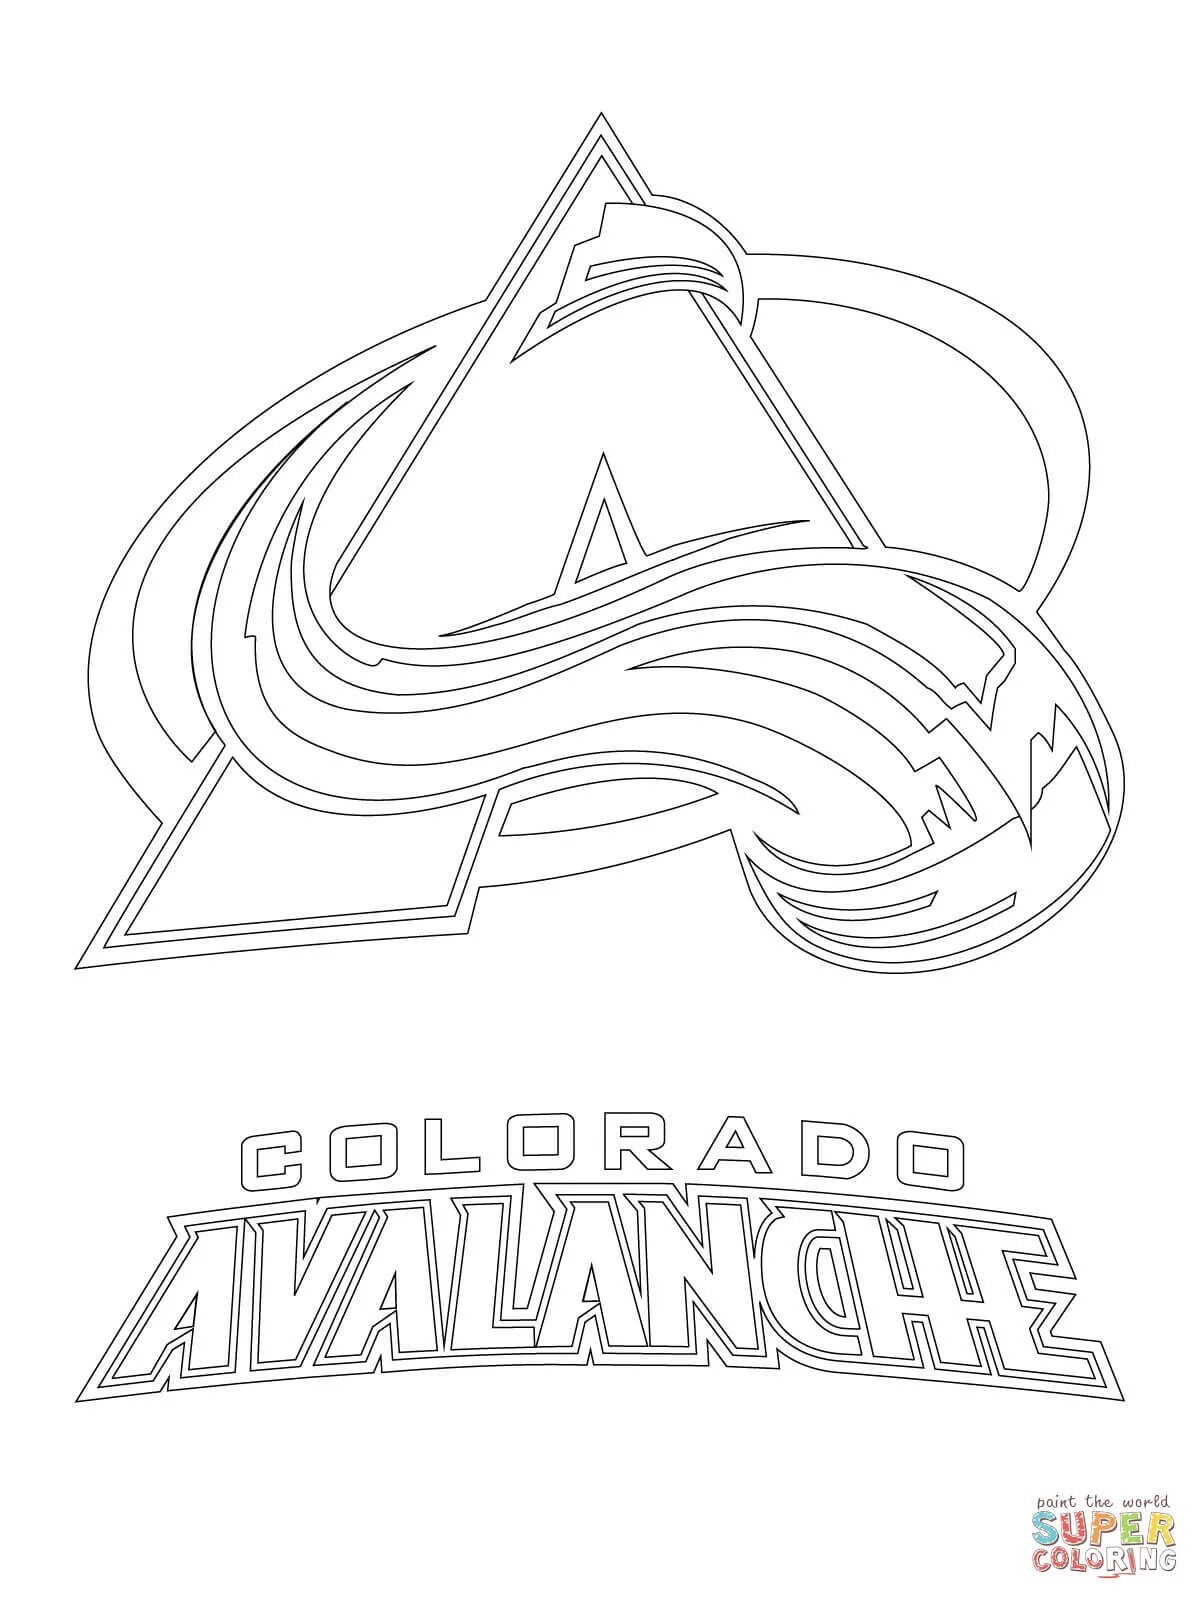 Coloring logos. Логотипы хоккейных команд раскраски. Раскраска хоккейные клубы. Эмблема раскраска. Хоккейные логотипы раскраски.